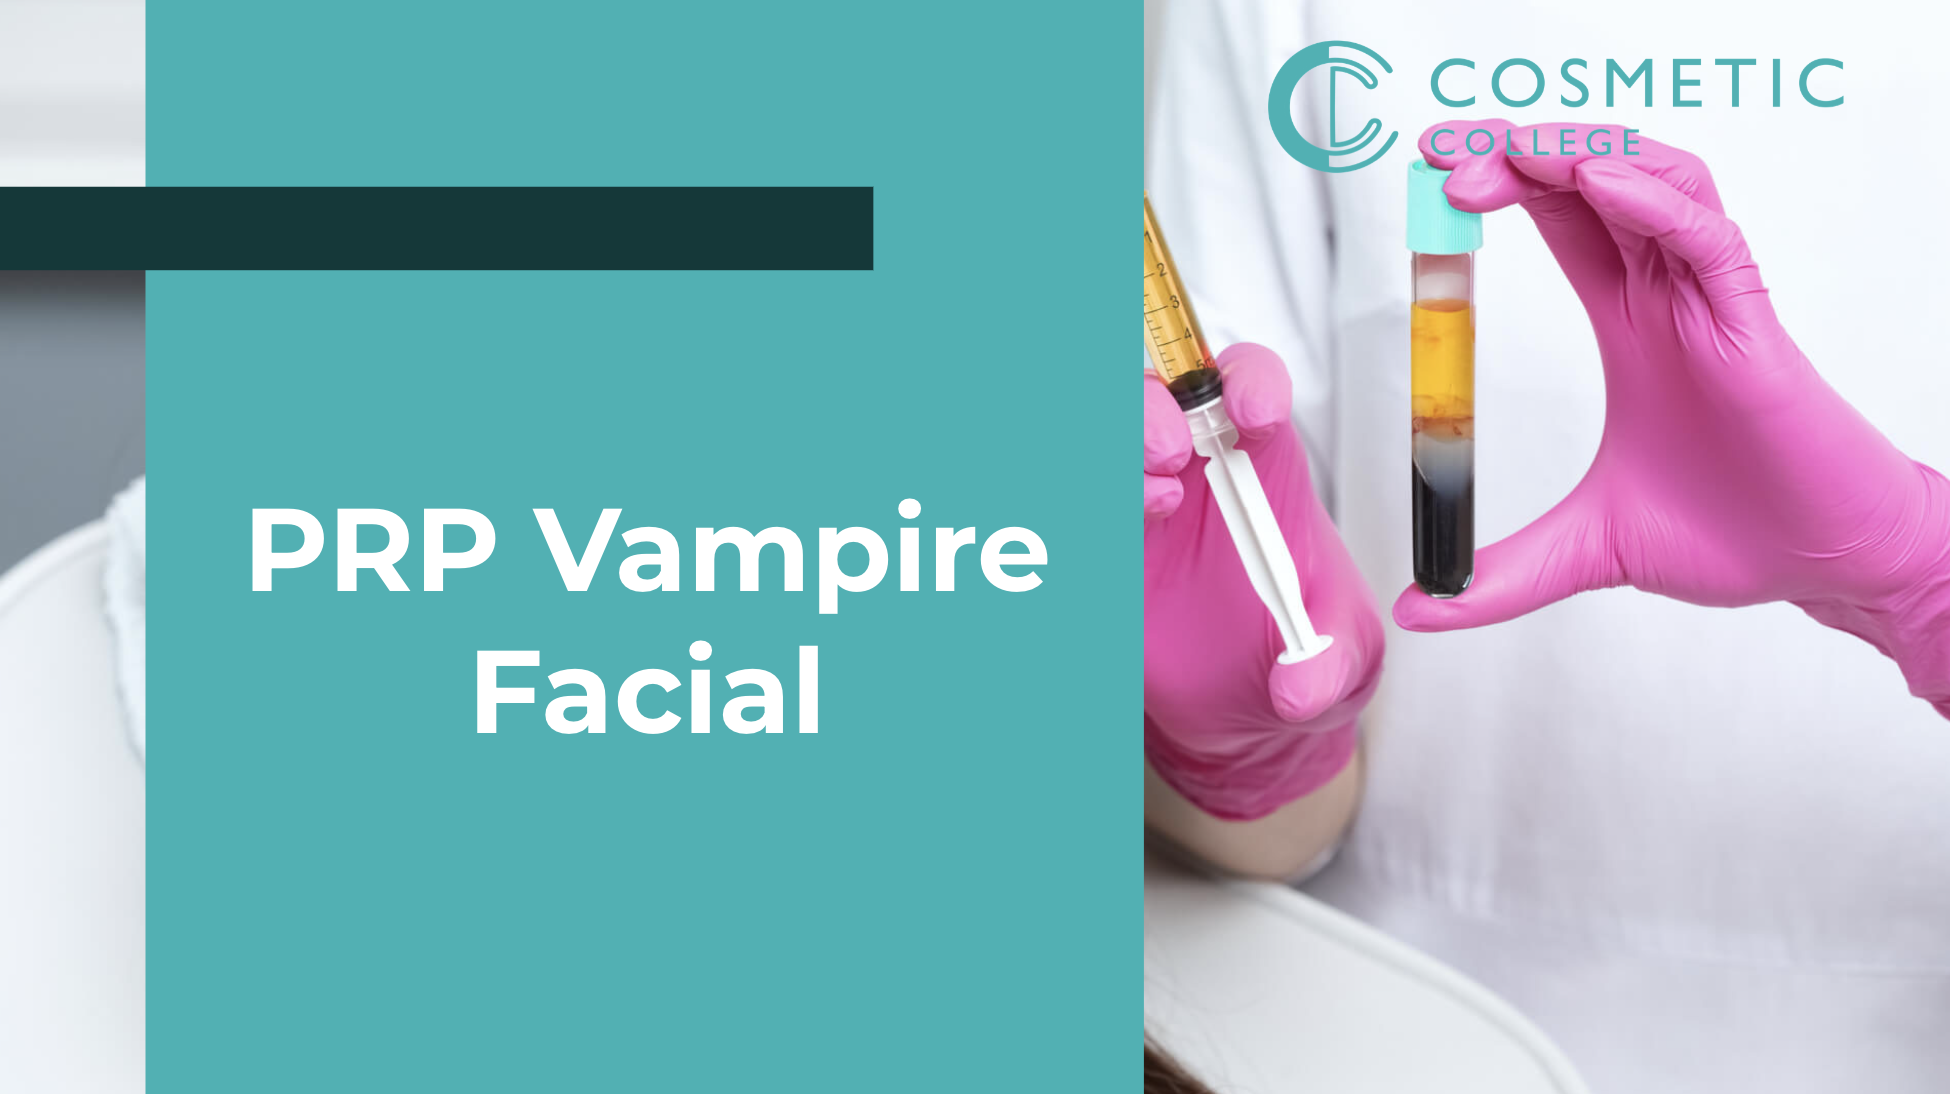 Online PRP Vampire Facial Training